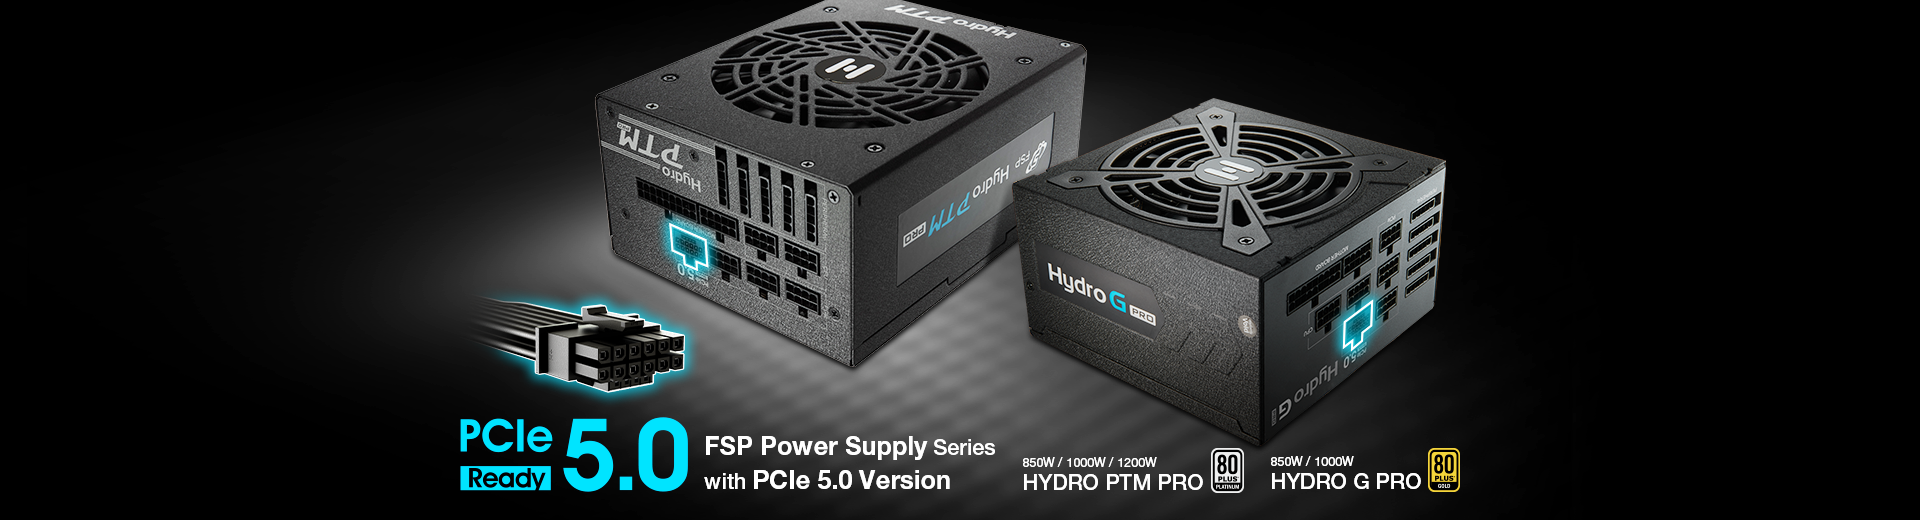 FSP Group presenta las PSU FSP Hydro G Pro y Hydro PTM Pro